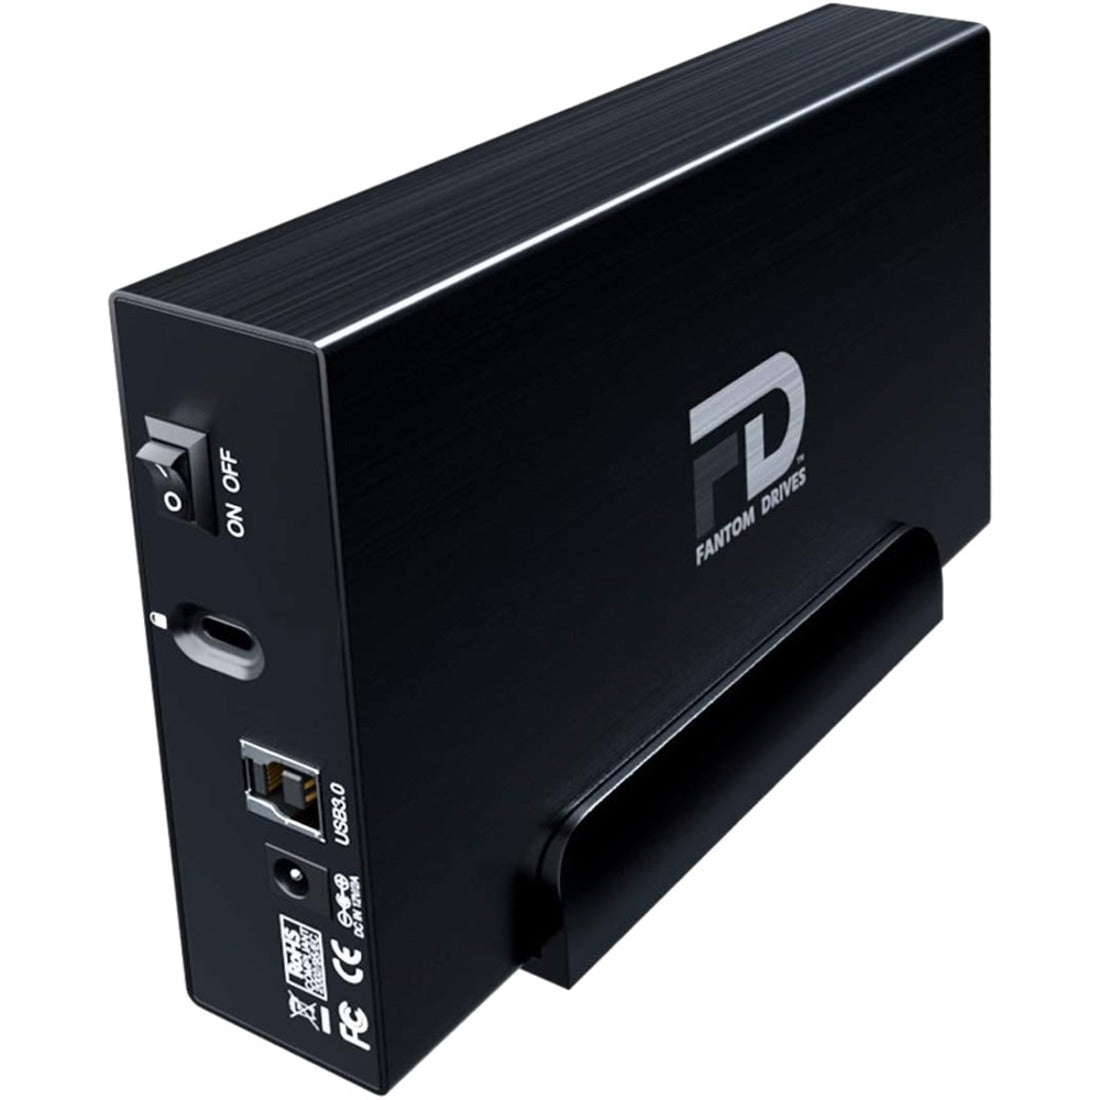 Fantom Drives GF3B4000U GFORCE 4TB External Hard Drive - USB 3.2 Gen 1 5Gb/s - Black, Quiet Fanless Design